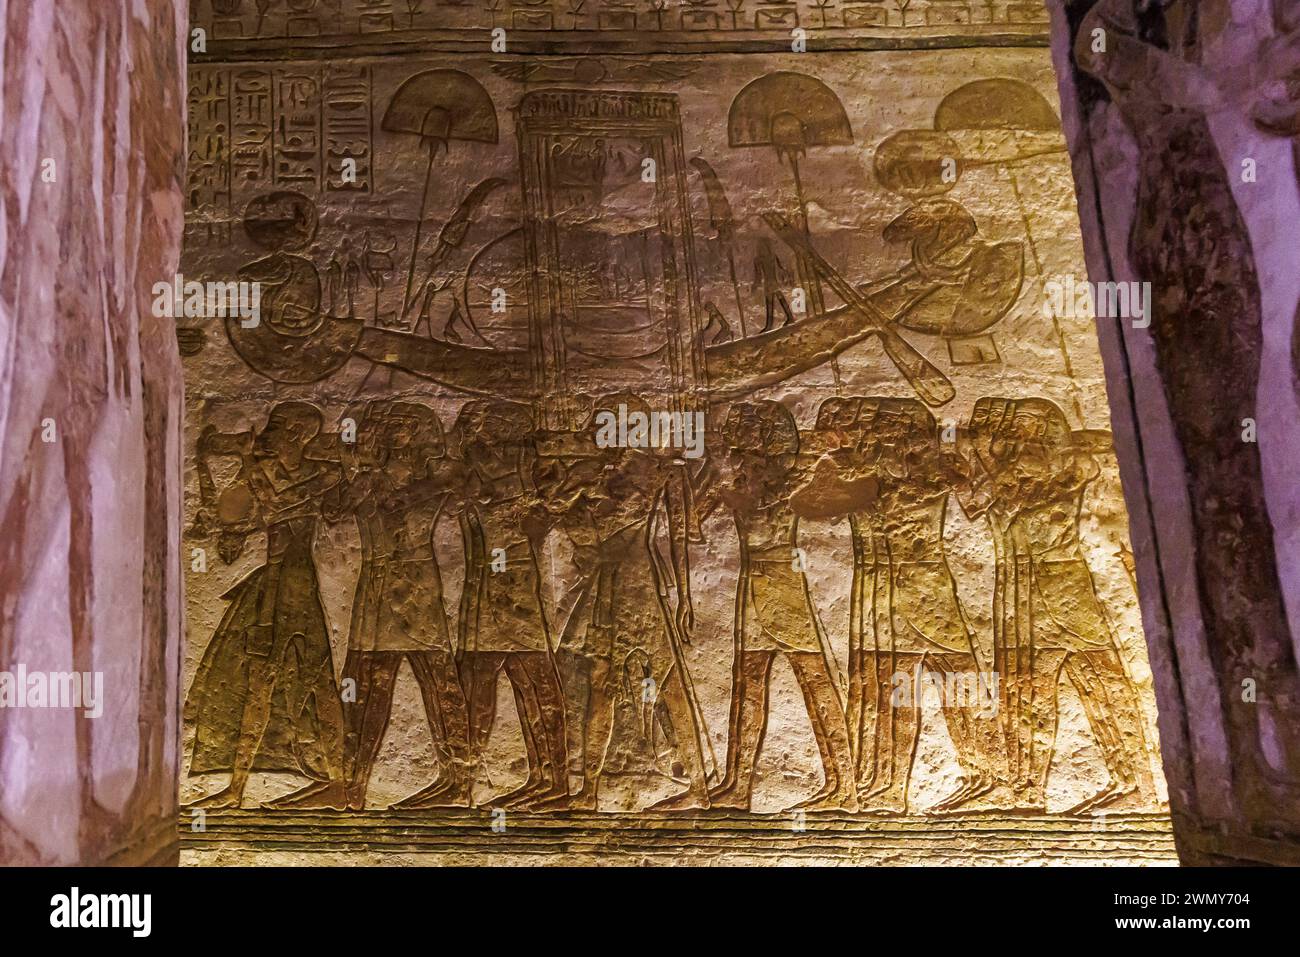 Egitto, Abu Simbel, monumenti nubiani da Abu Simbel a file, patrimonio dell'umanità dell'UNESCO, tempio Ramses II, i prieti trasportano la barca sacra Foto Stock